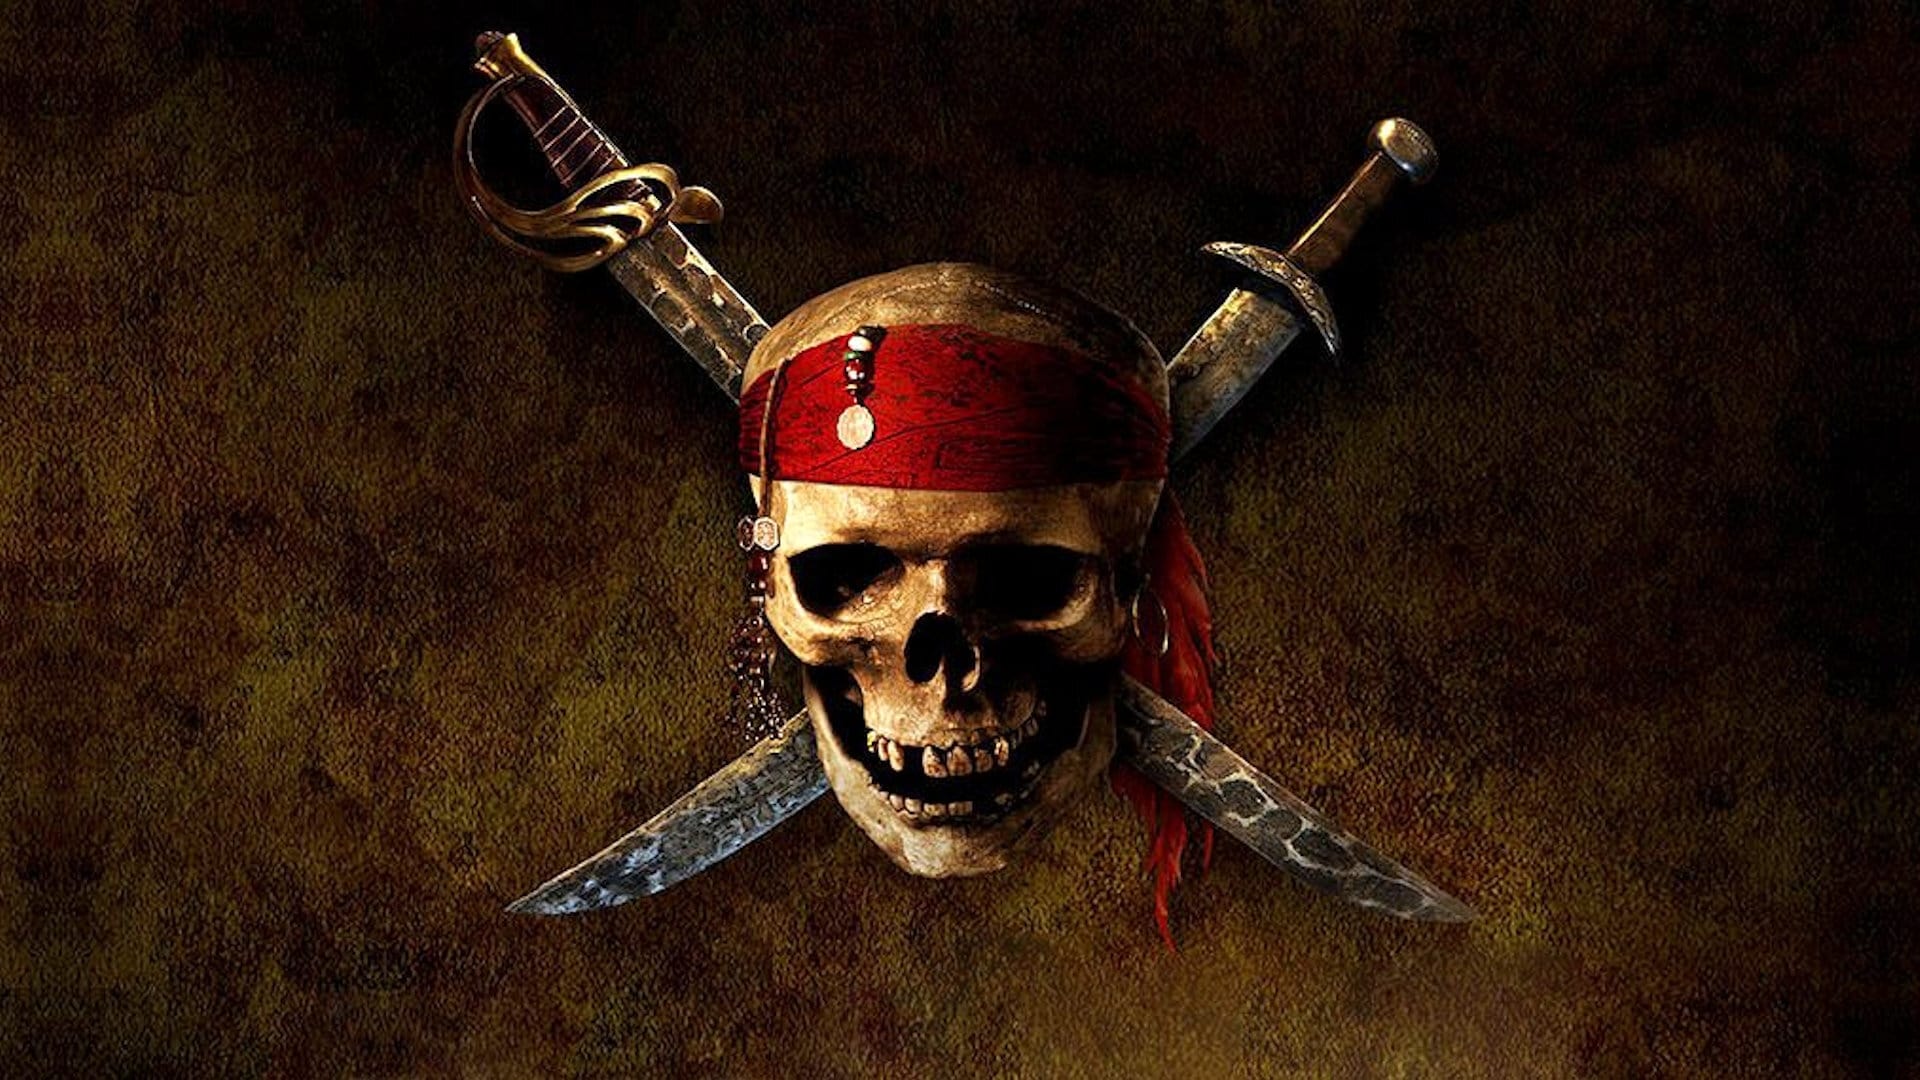 Image du film Pirates des Caraïbes : la malédiction du Black Pearl d6ziyza8m4pcp8sx15d0rsstjnzjpg